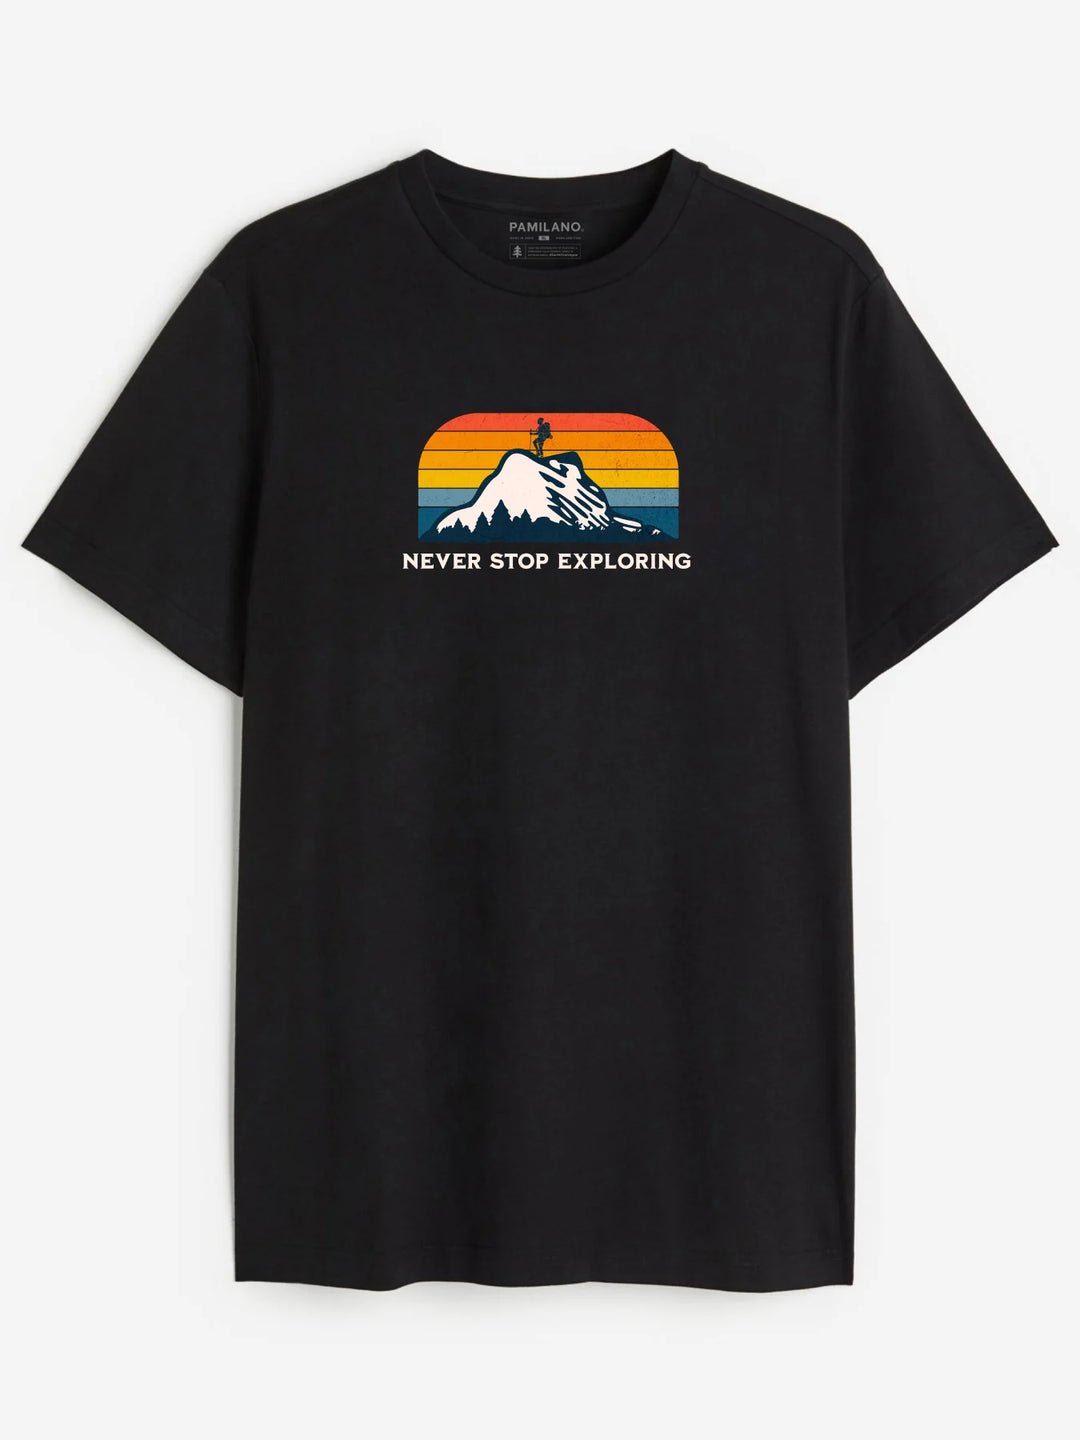 Chase Sunsets - Unisex T-Shirt